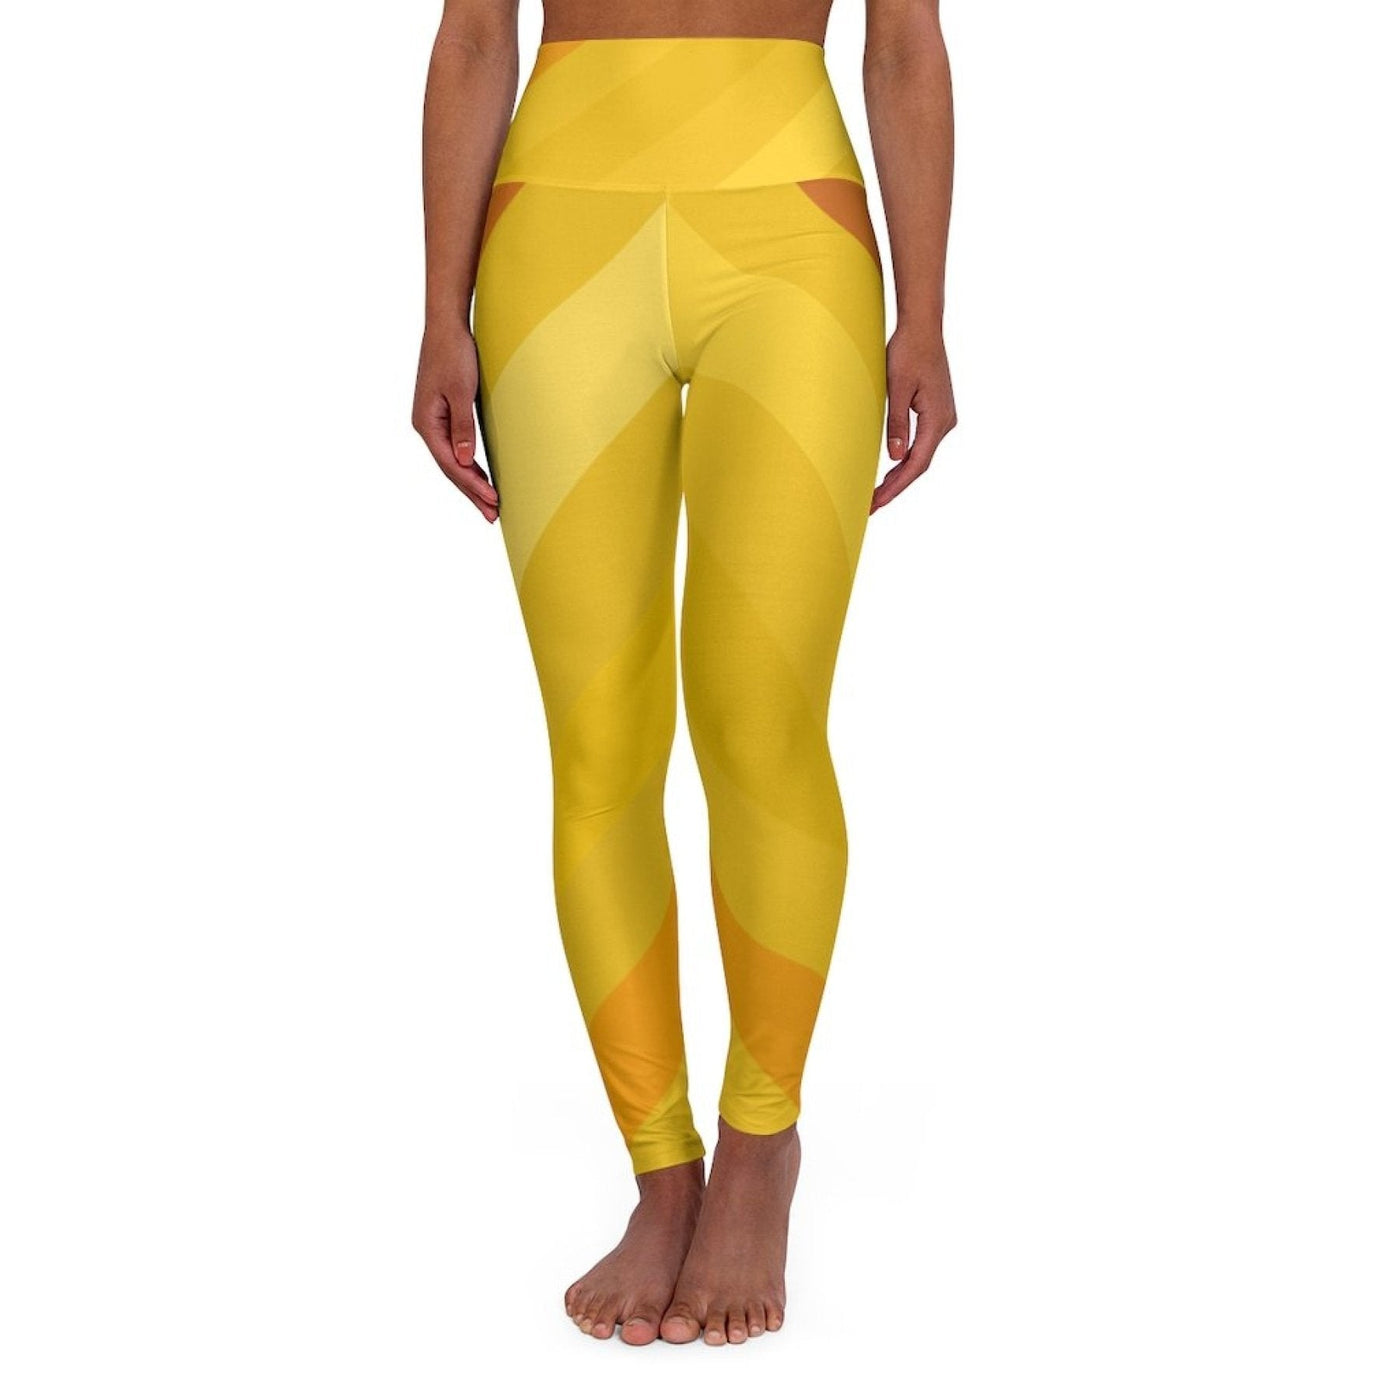 Womens High - waist Fitness Legging Yoga Pants Gold Yellow Herringbone - Womens